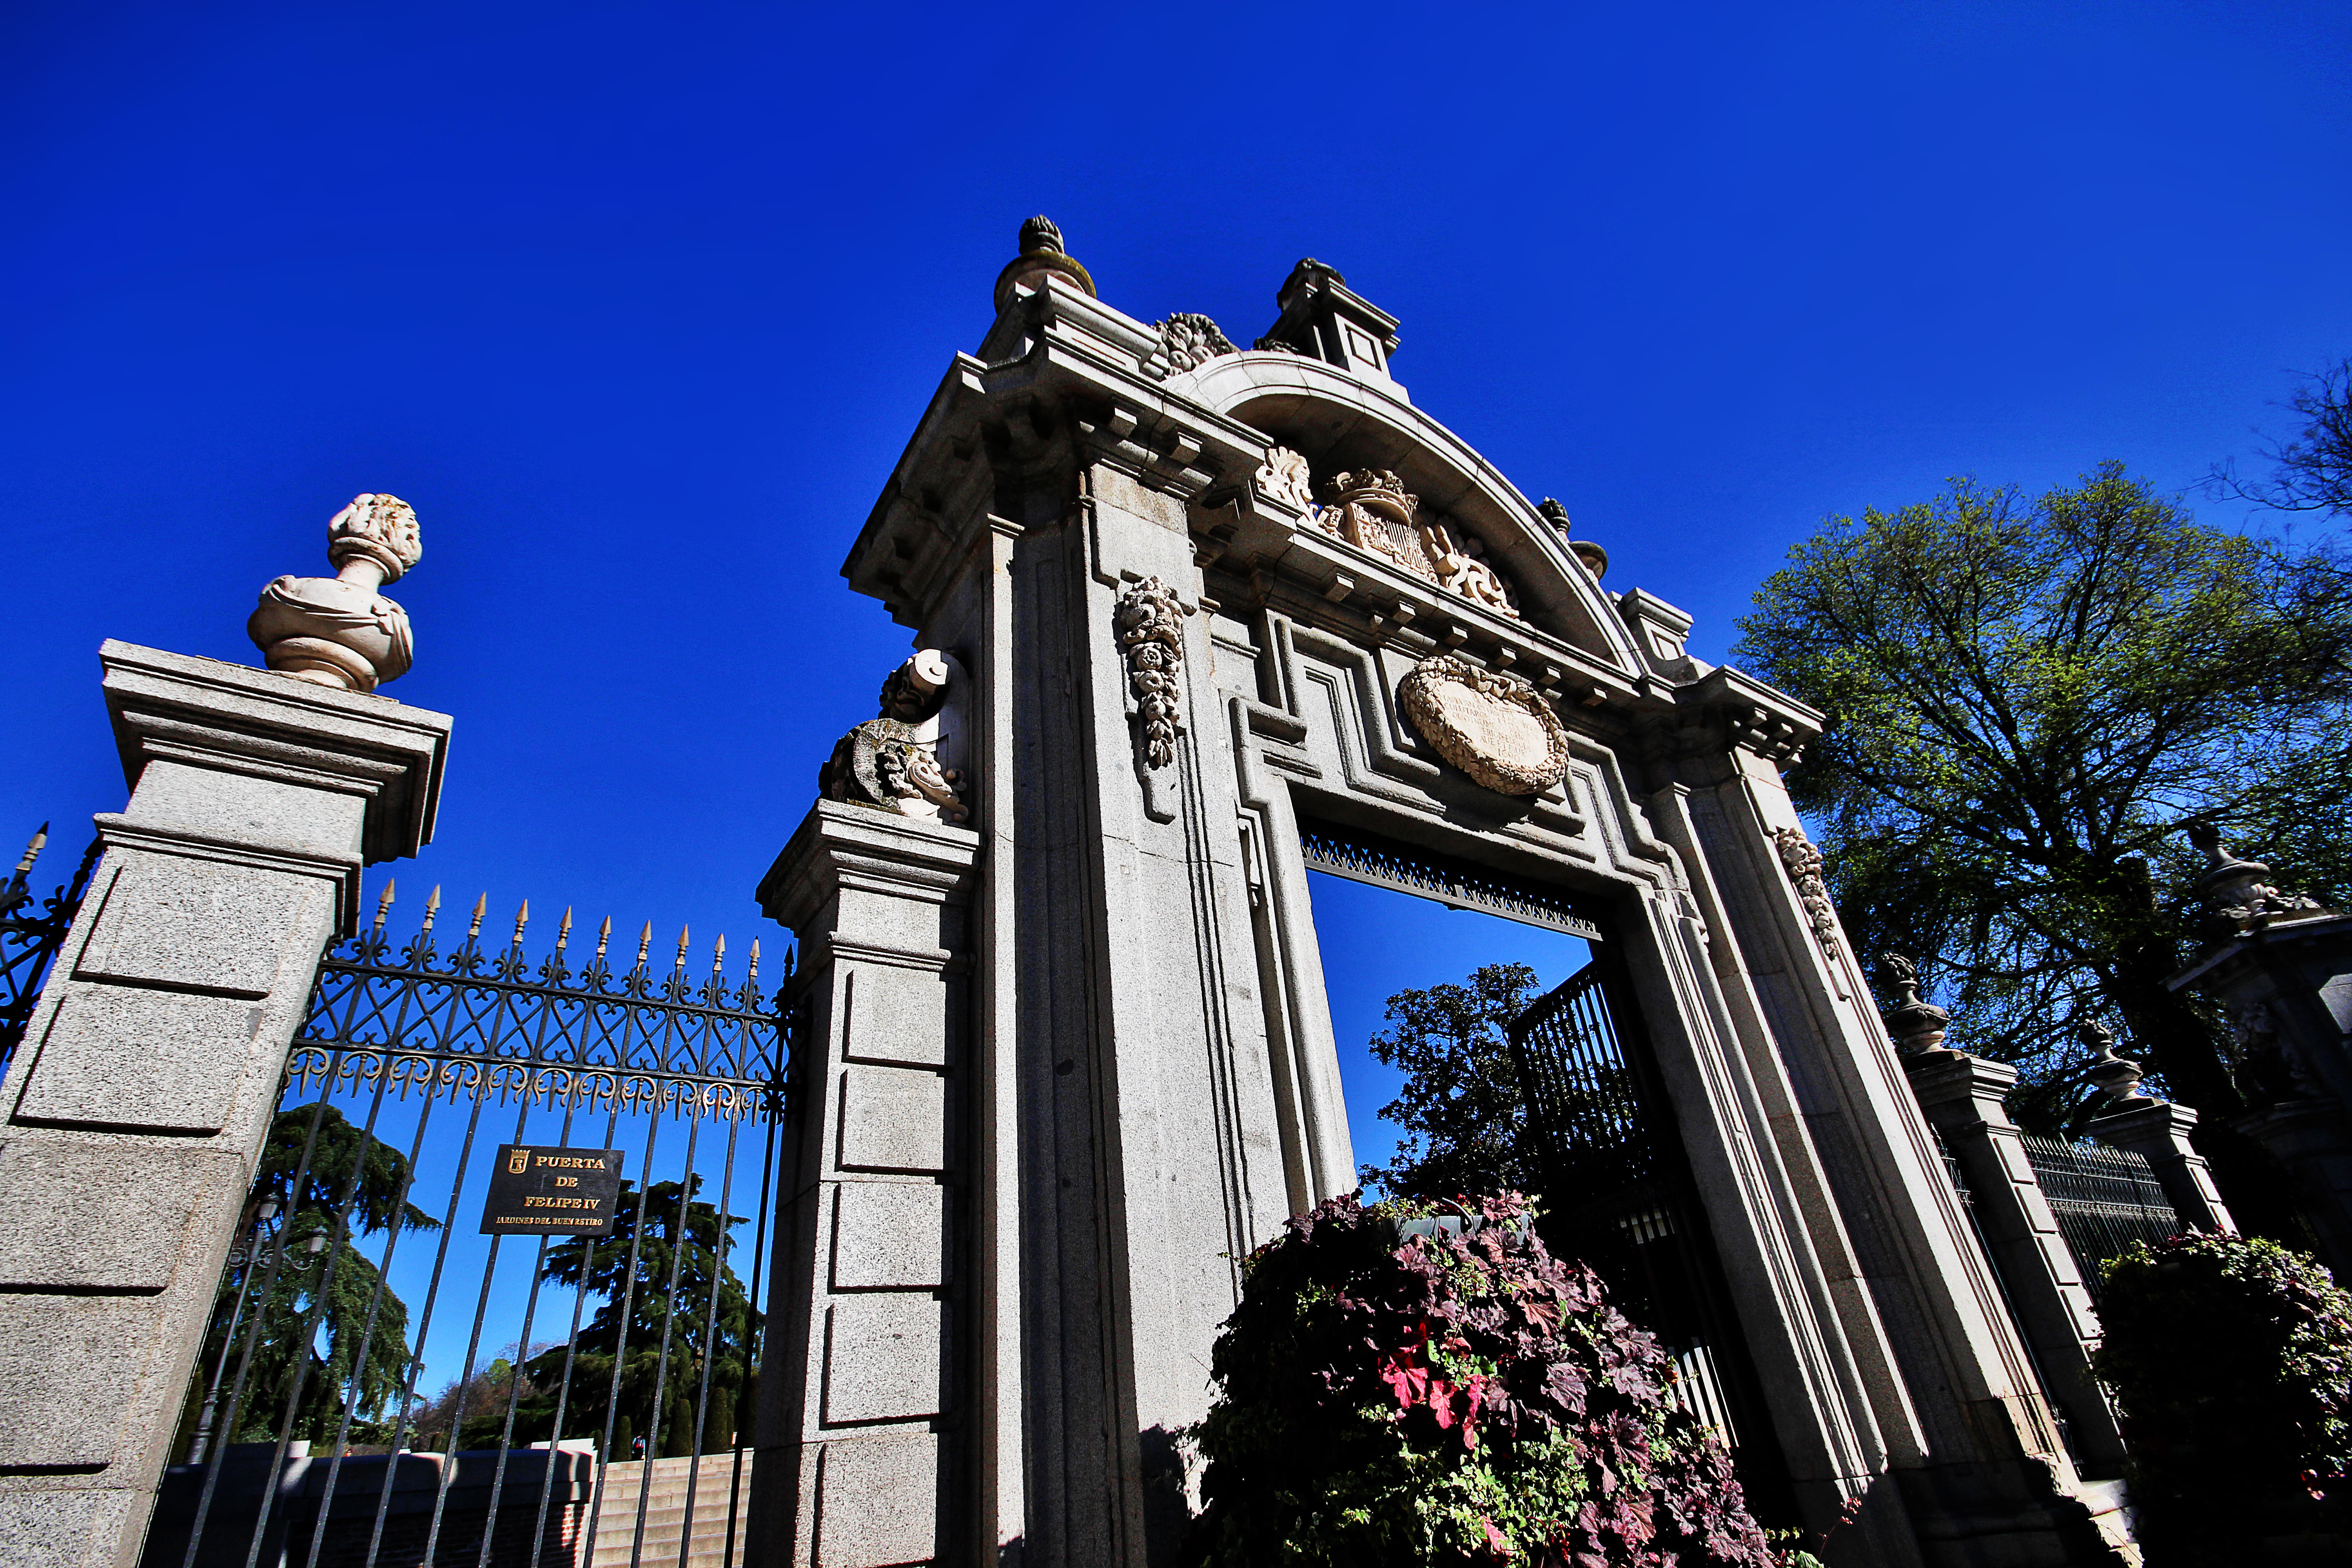 Royal Palace of Madrid Entrances